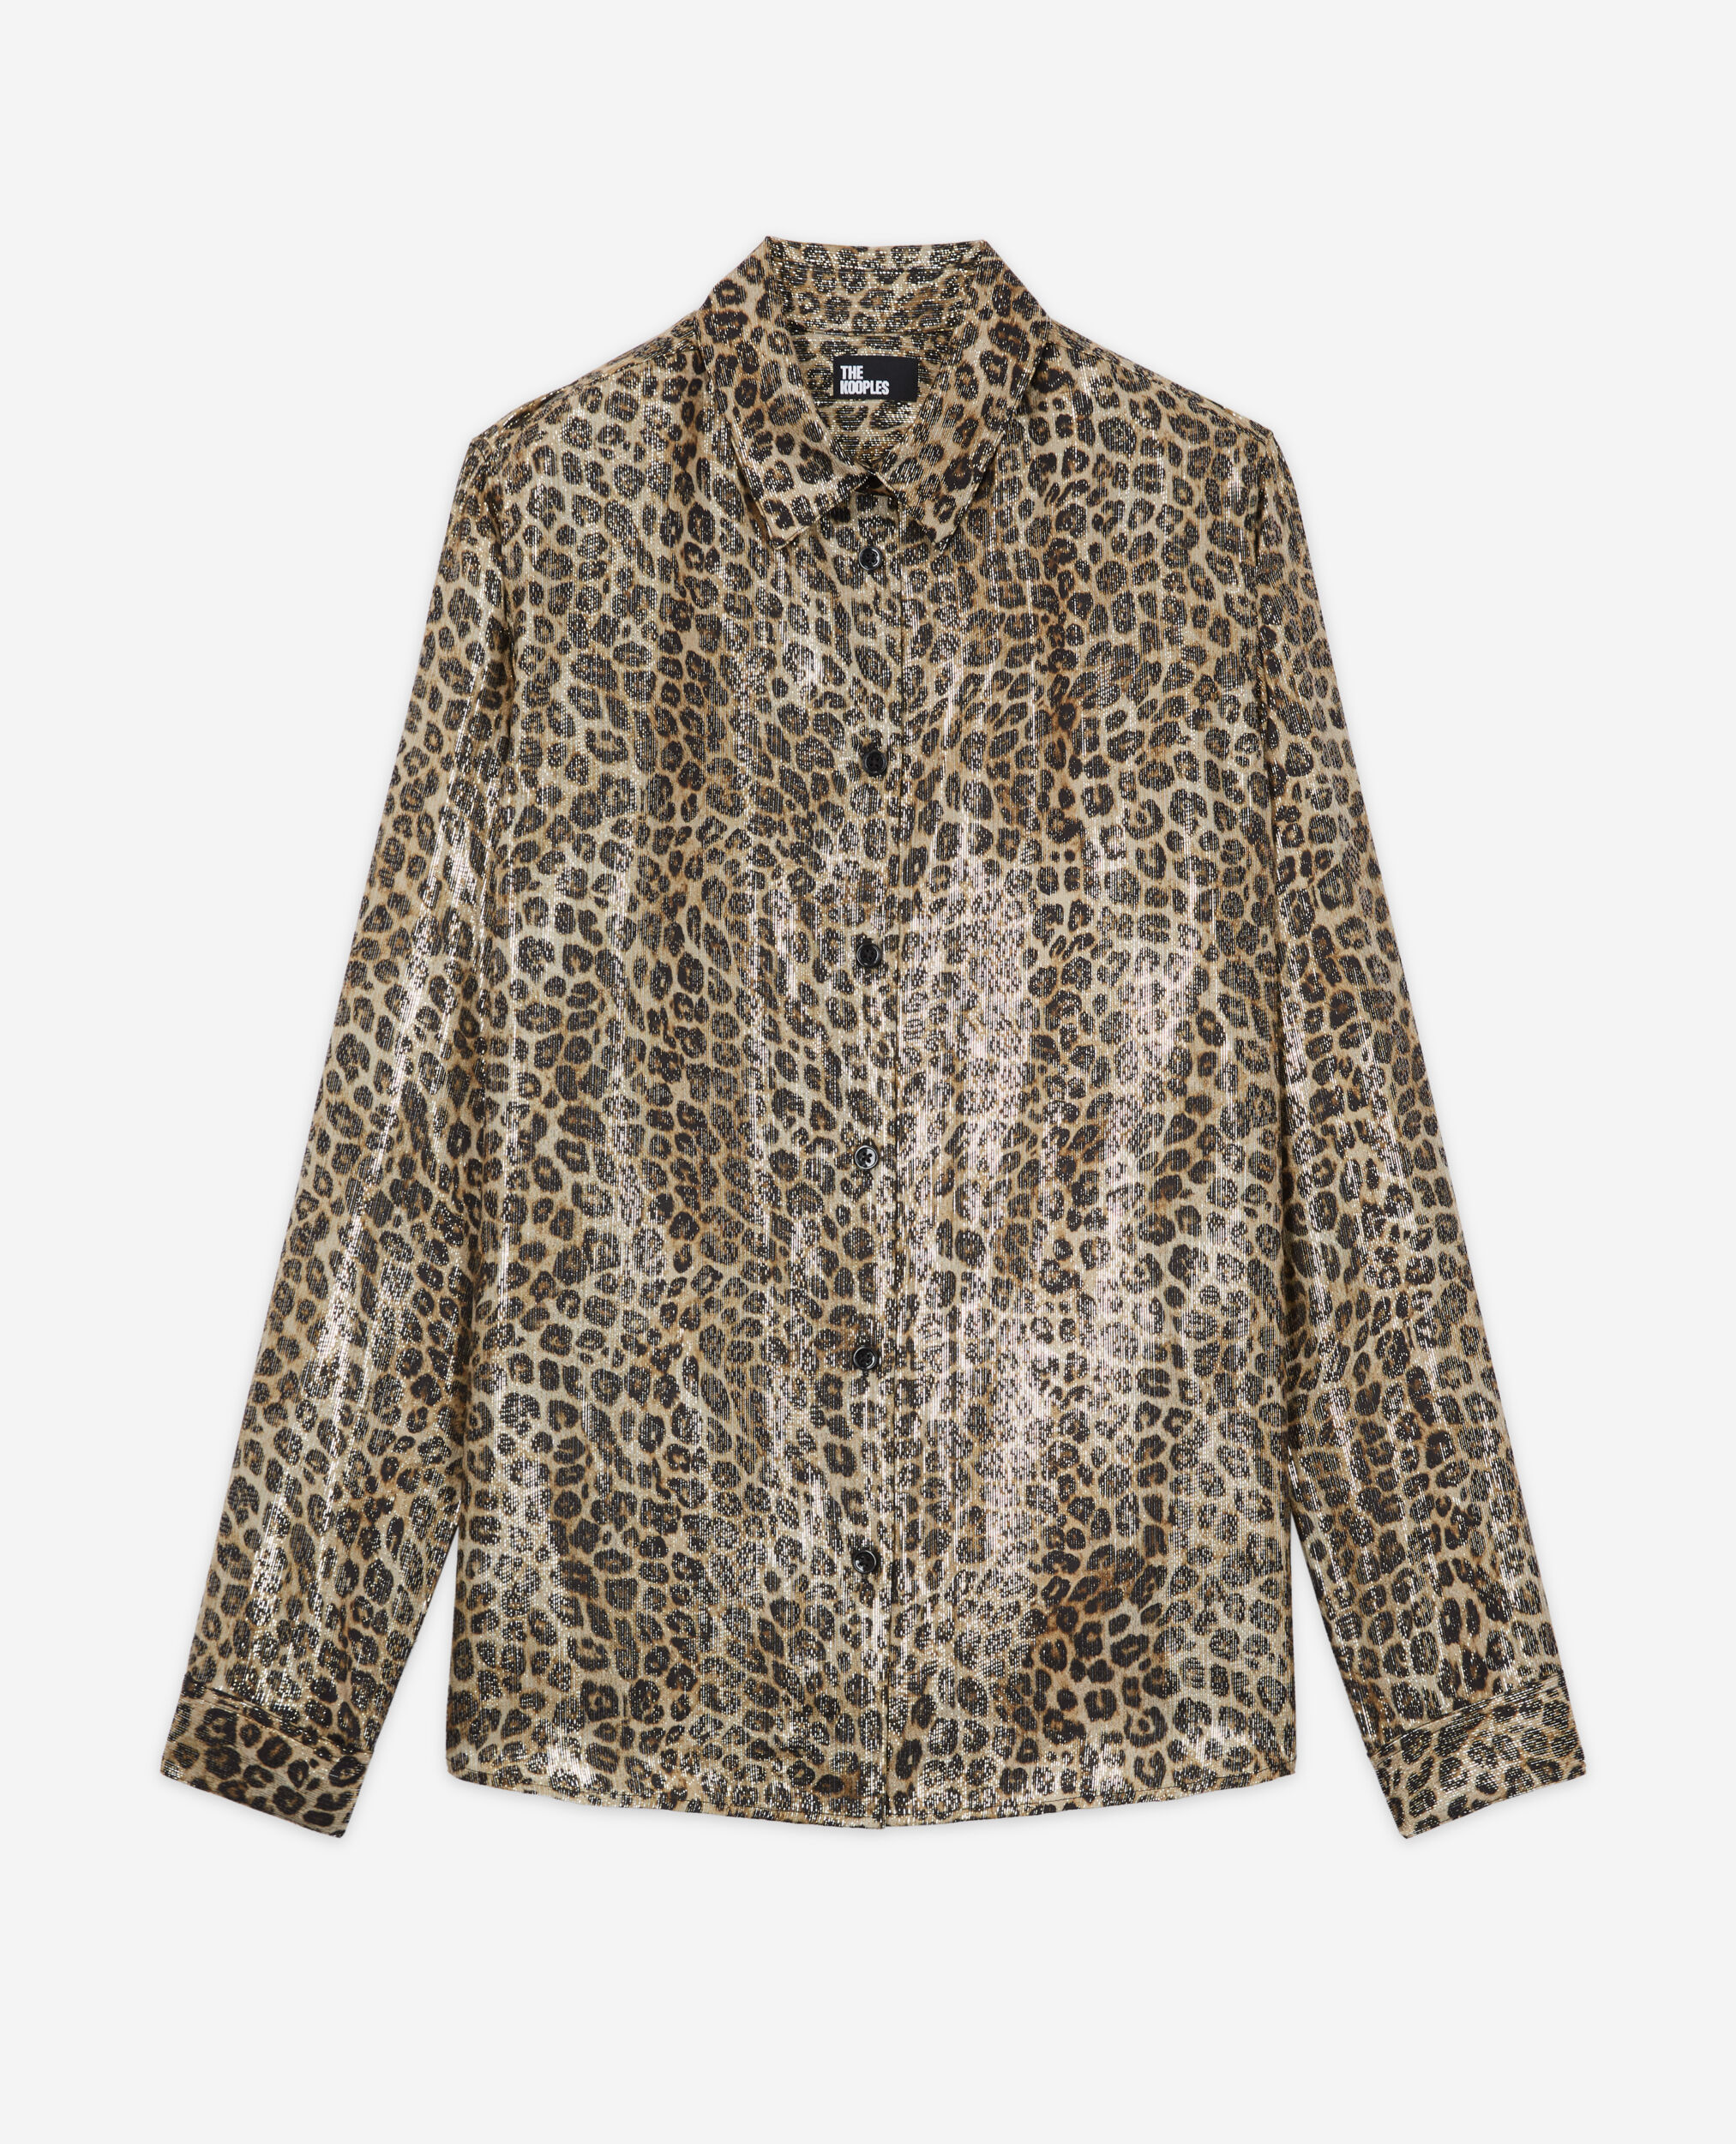 Camisa fluida leopardo, LEOPARD, hi-res image number null